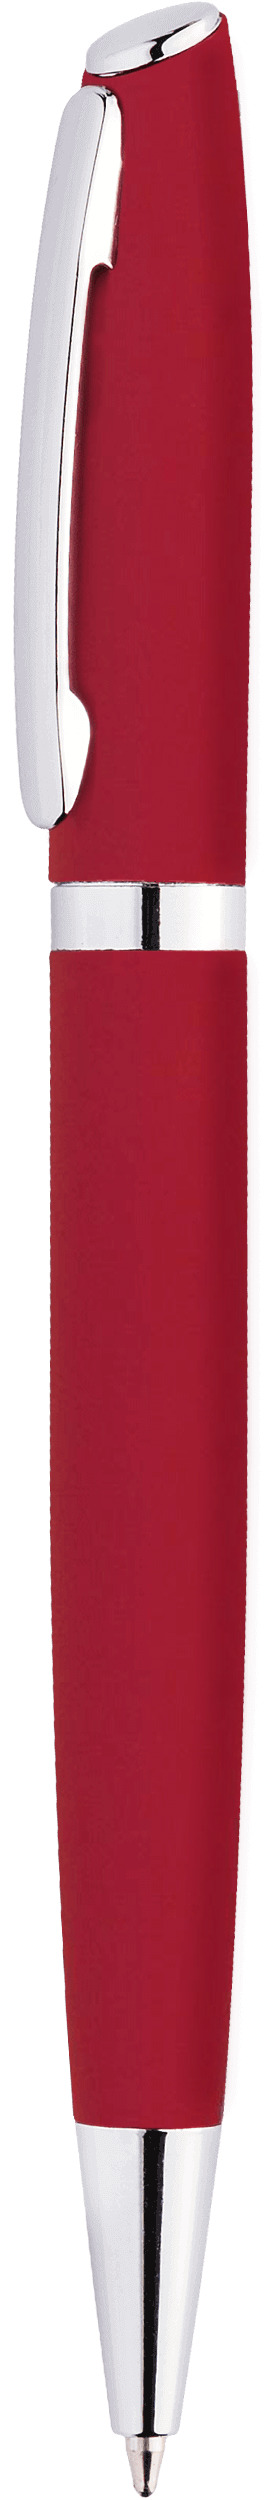 Ручка VESTA SOFT, ярко-красная